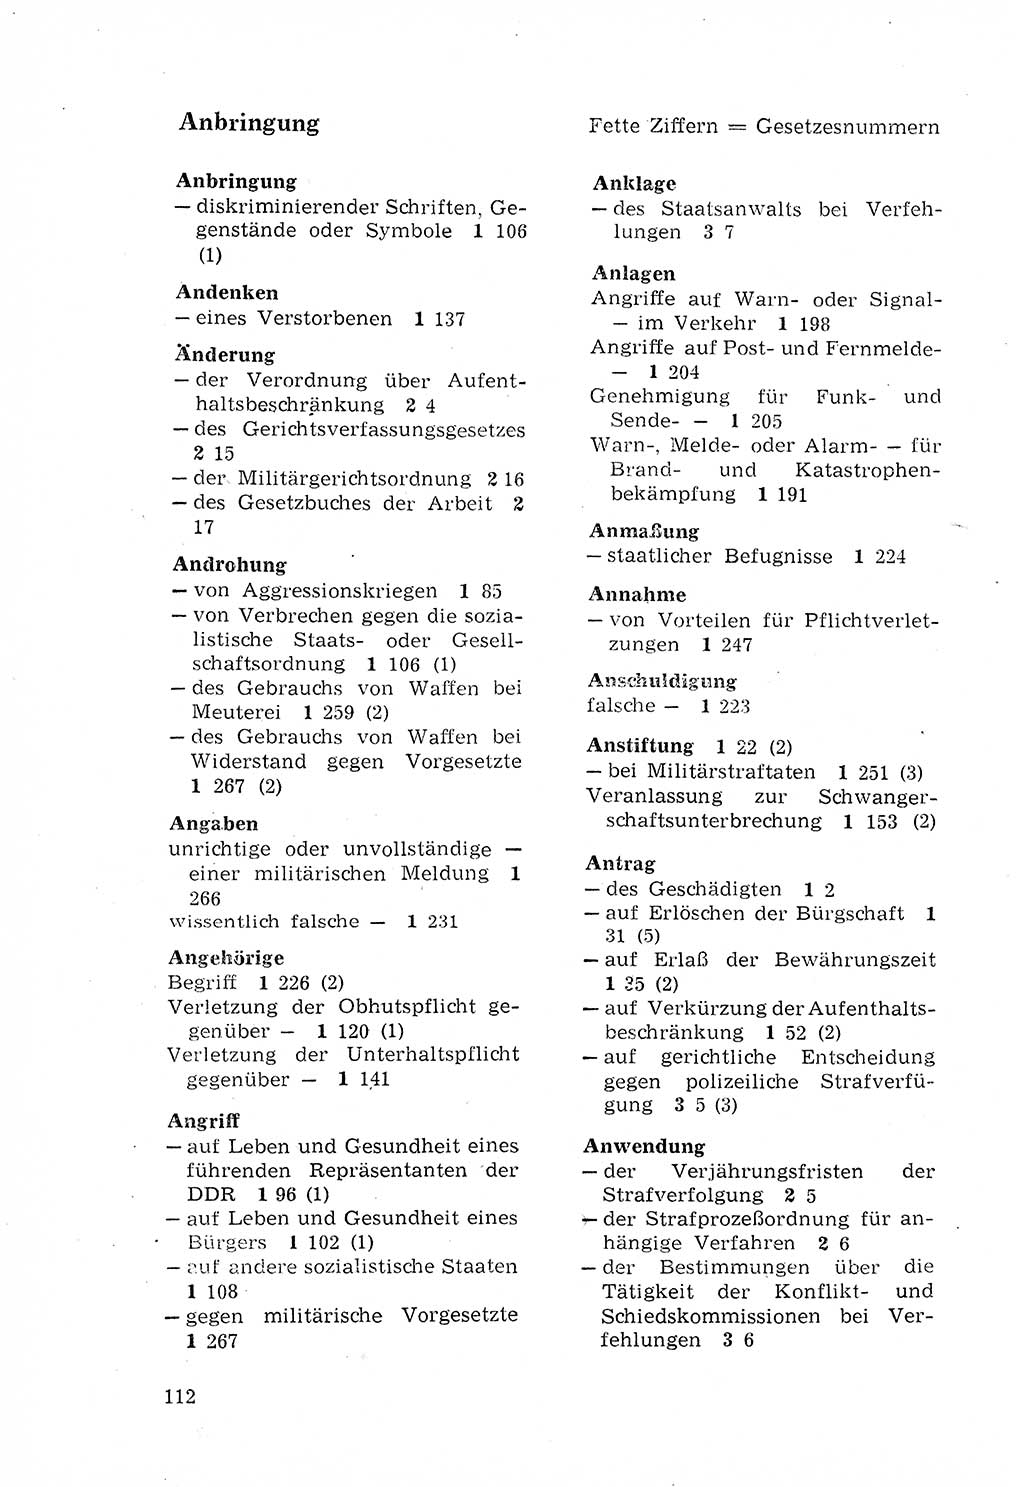 Strafgesetzbuch (StGB) der Deutschen Demokratischen Republik (DDR) 1968, Seite 112 (StGB DDR 1968, S. 112)